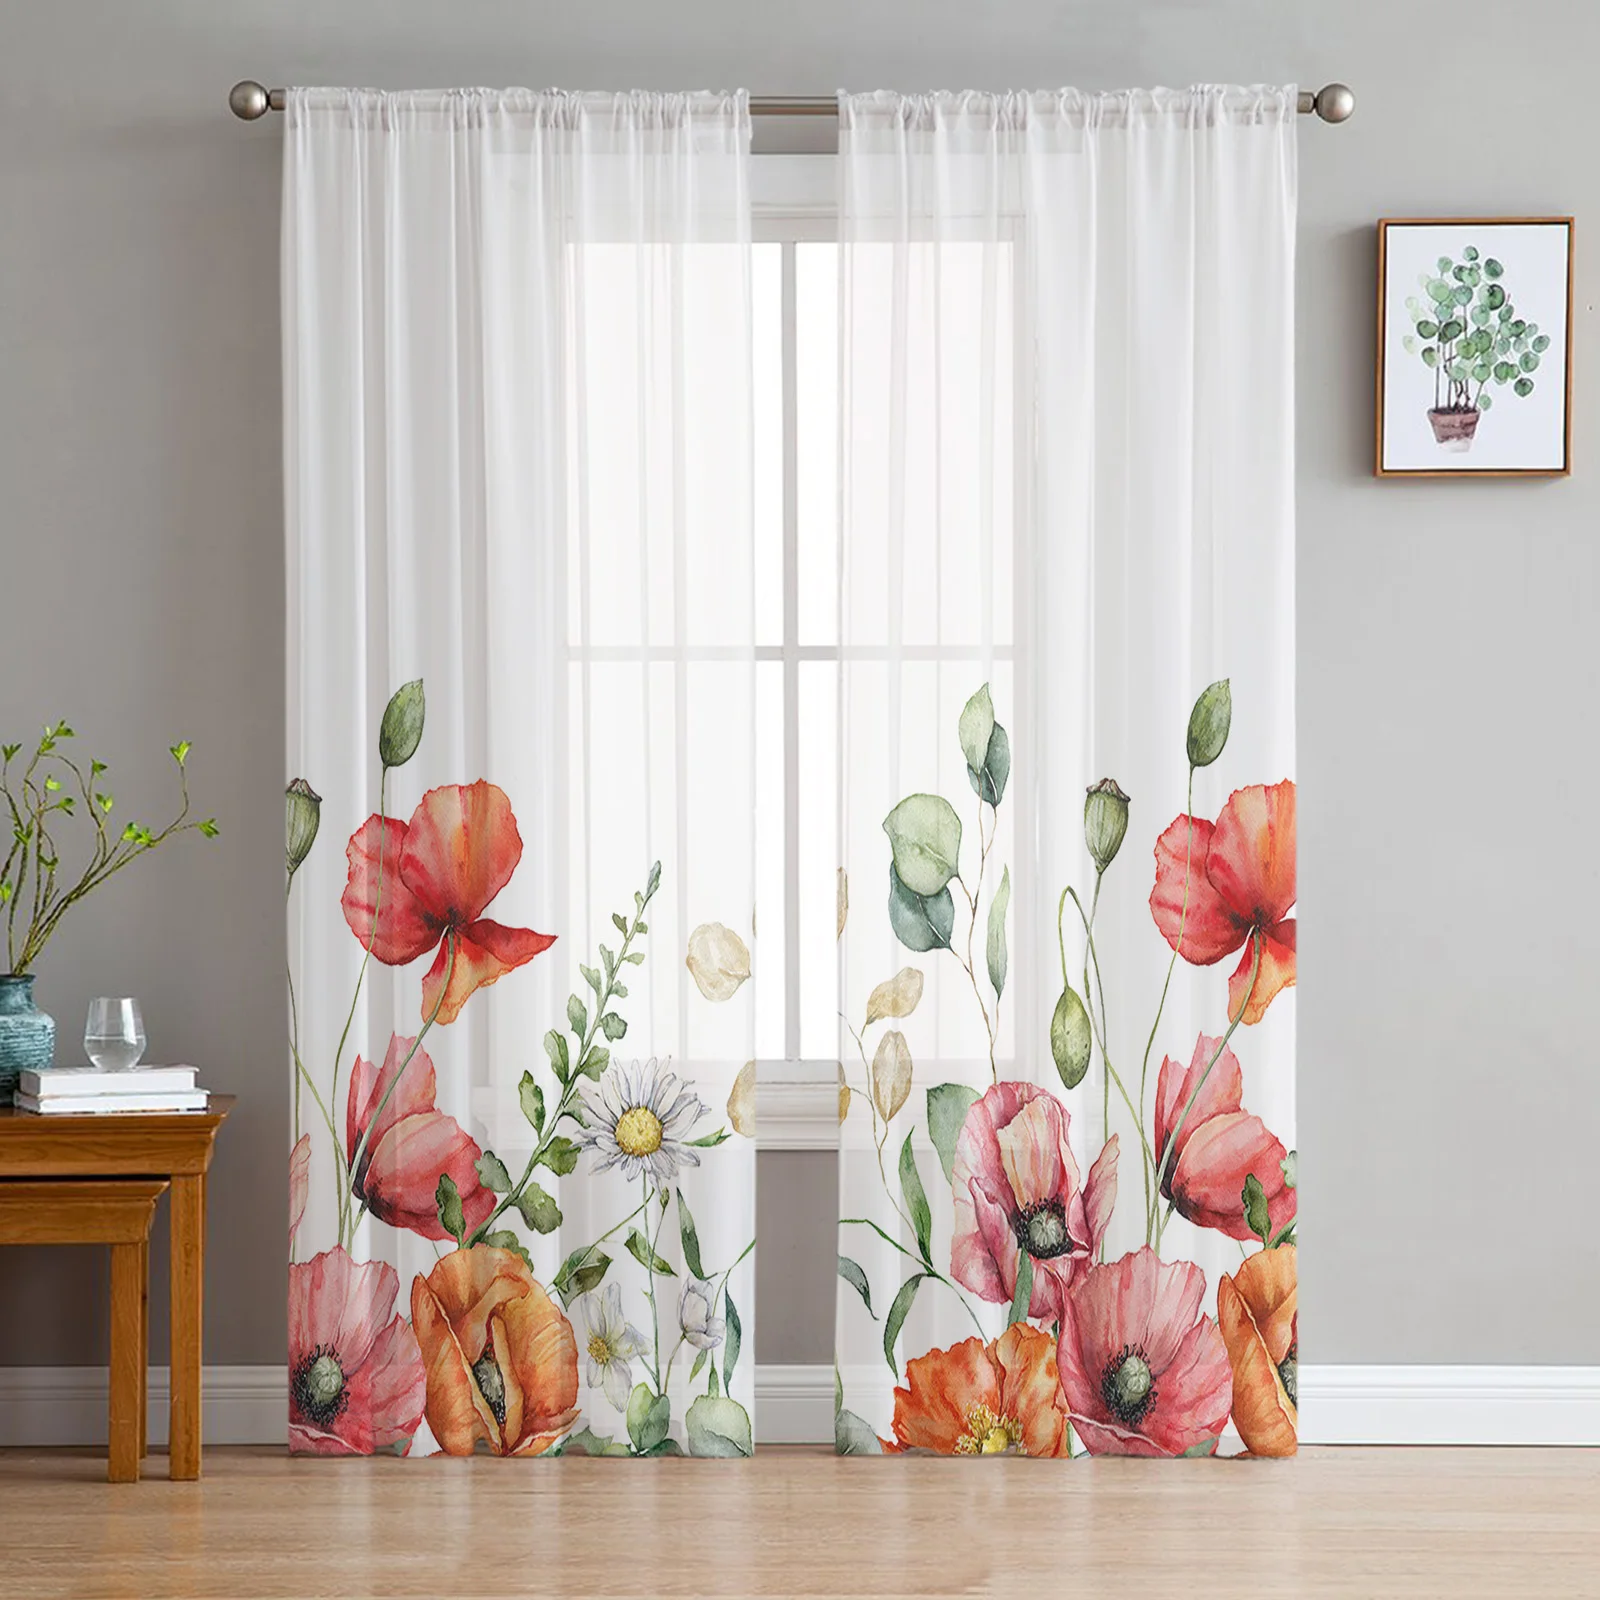 צמח טרופי אקליפטוס פרח הפרג טול וילונות עבור חדר שינה בעיצוב הבית הסלון המטבח ואל וילונות, וילונות עיוור